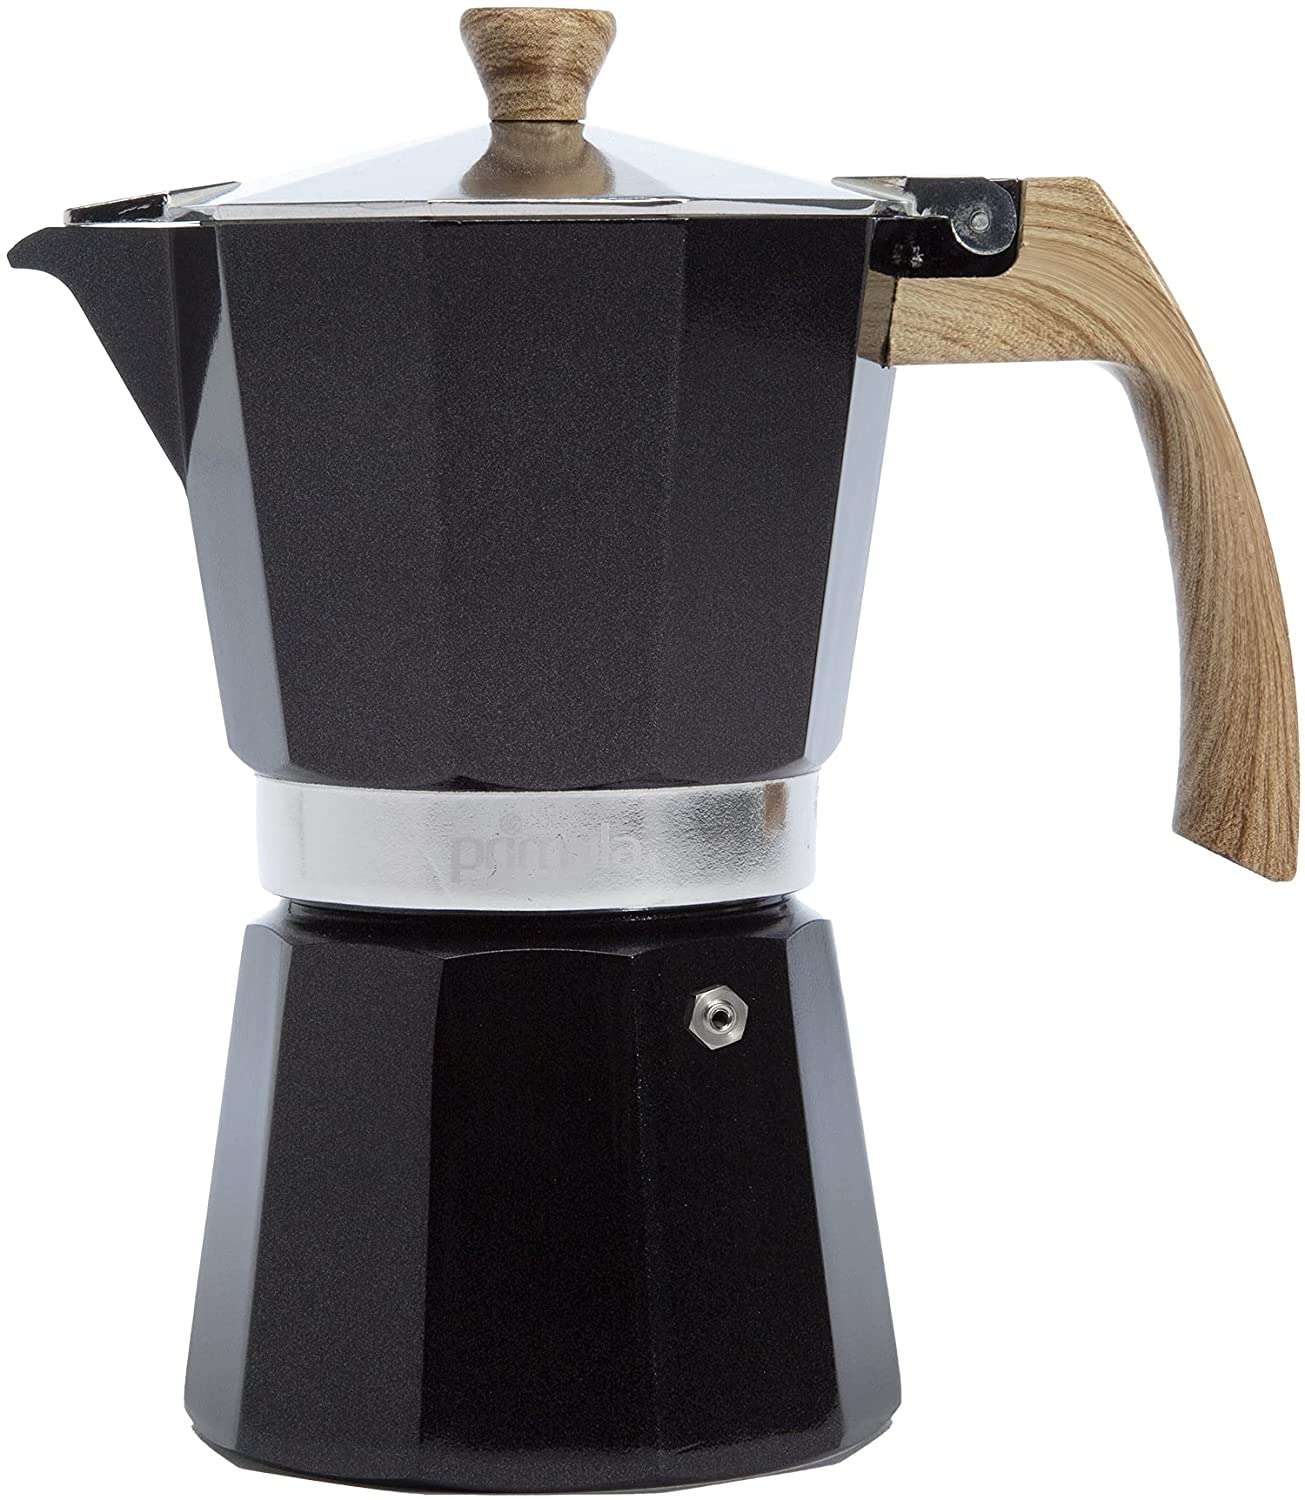 Primula Classic Stovetop Espresso and Coffee Maker, Moka Pot for